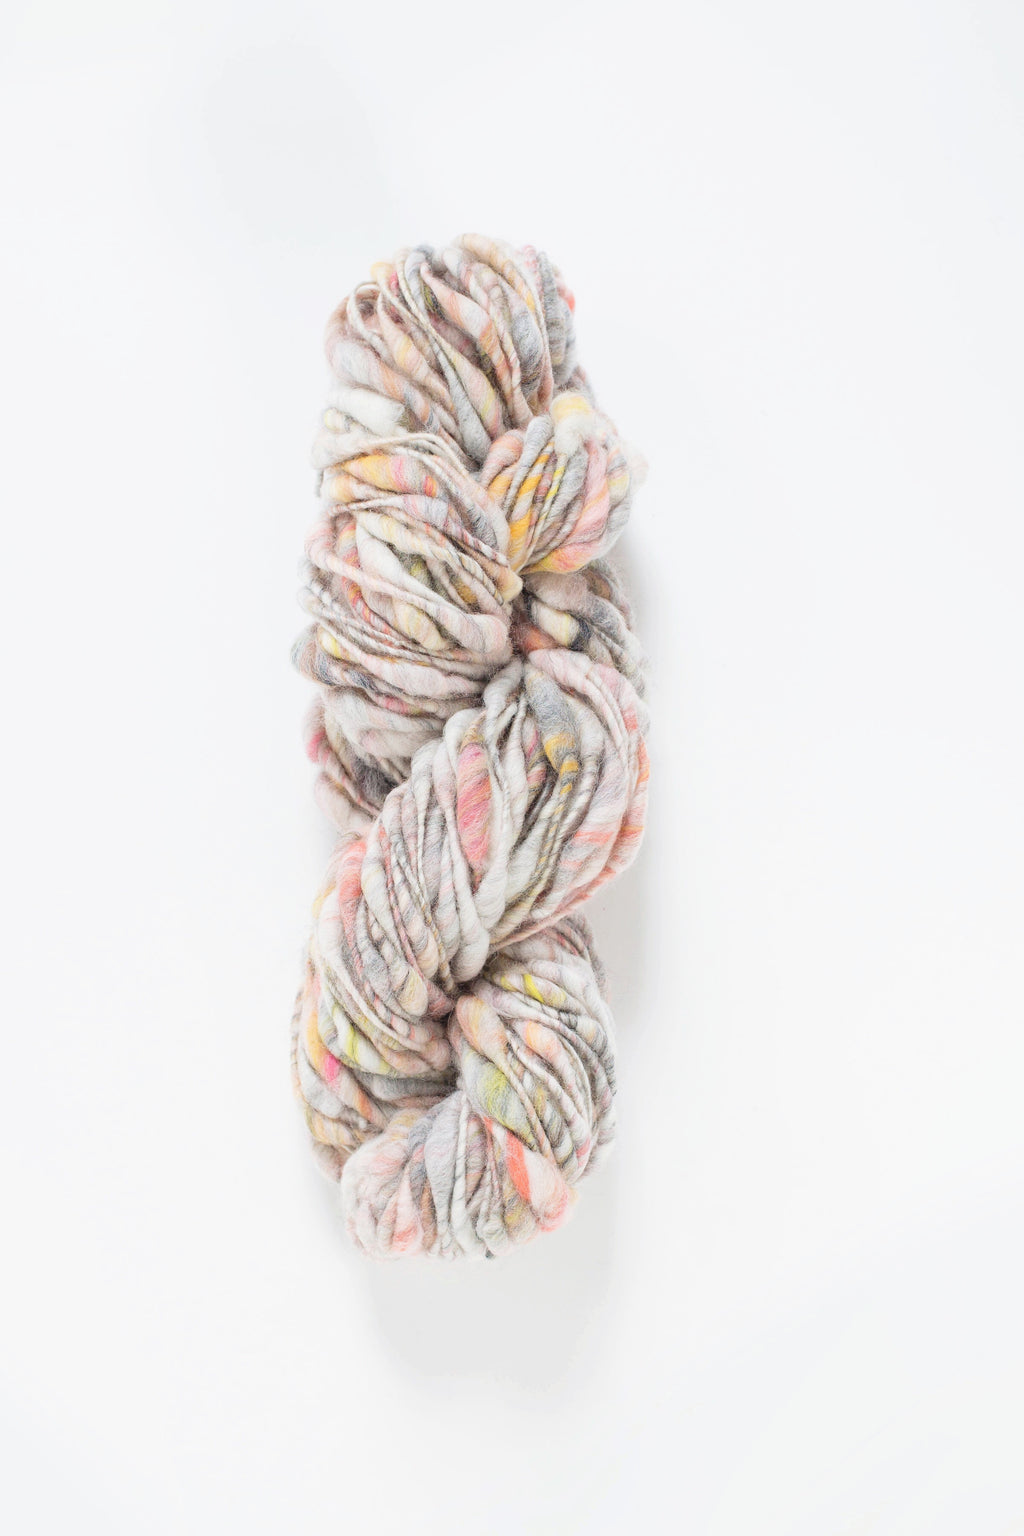 Cast Away Yarn hand knitting yarn - chunky bulky handspun yarn in Amulet